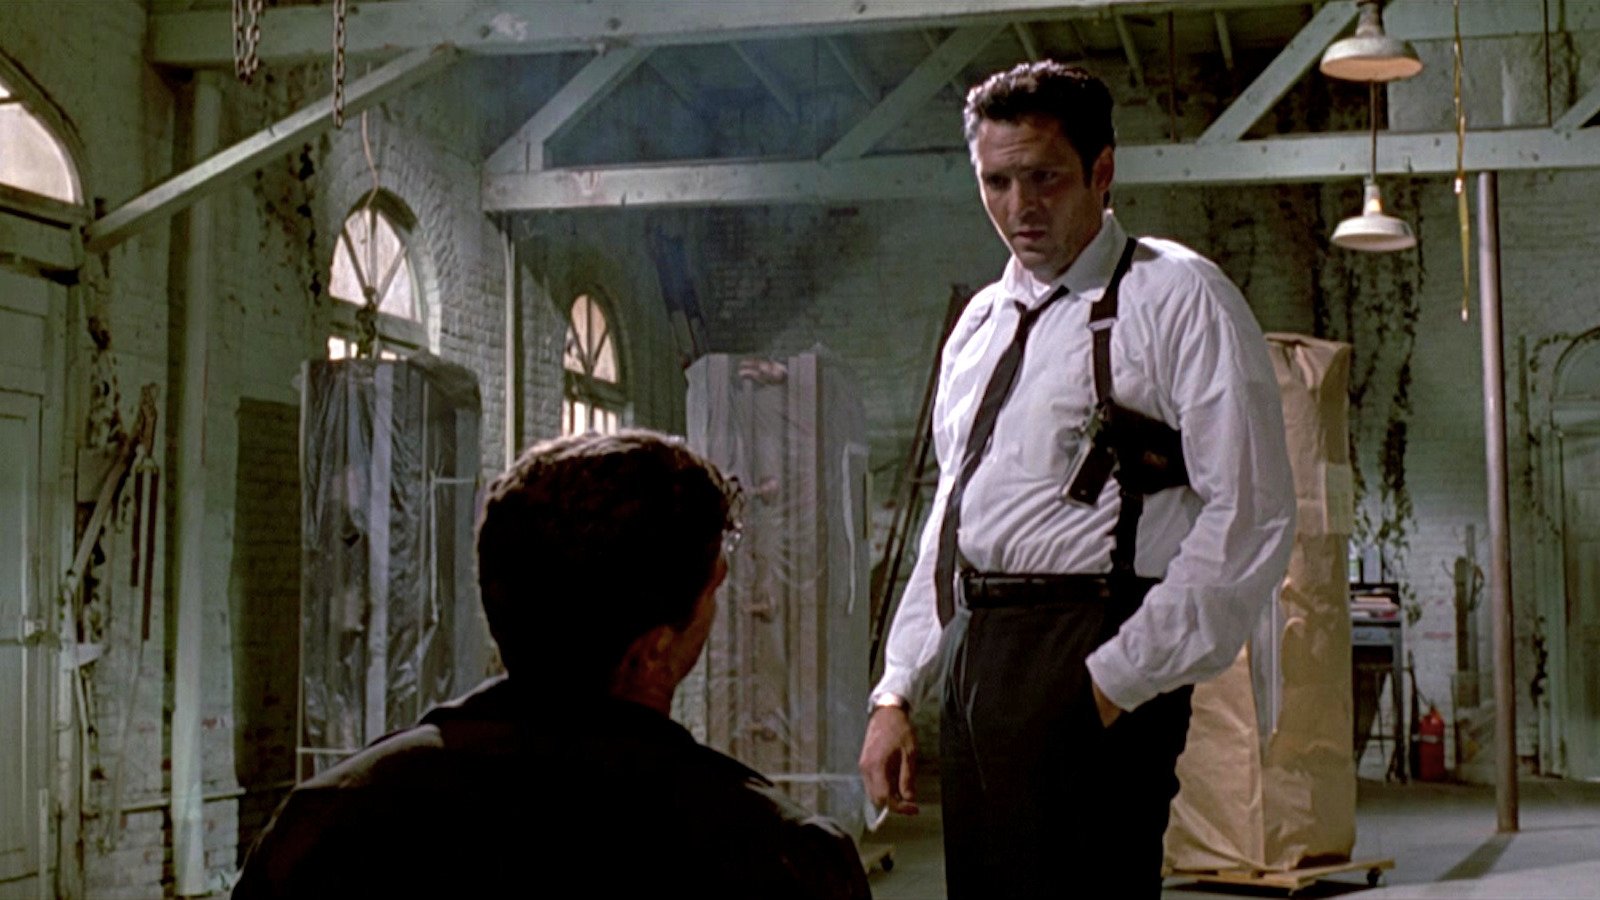 Le iene: una scena disturbante del film di Tarantino spinse Wes Craven a lasciare la sala